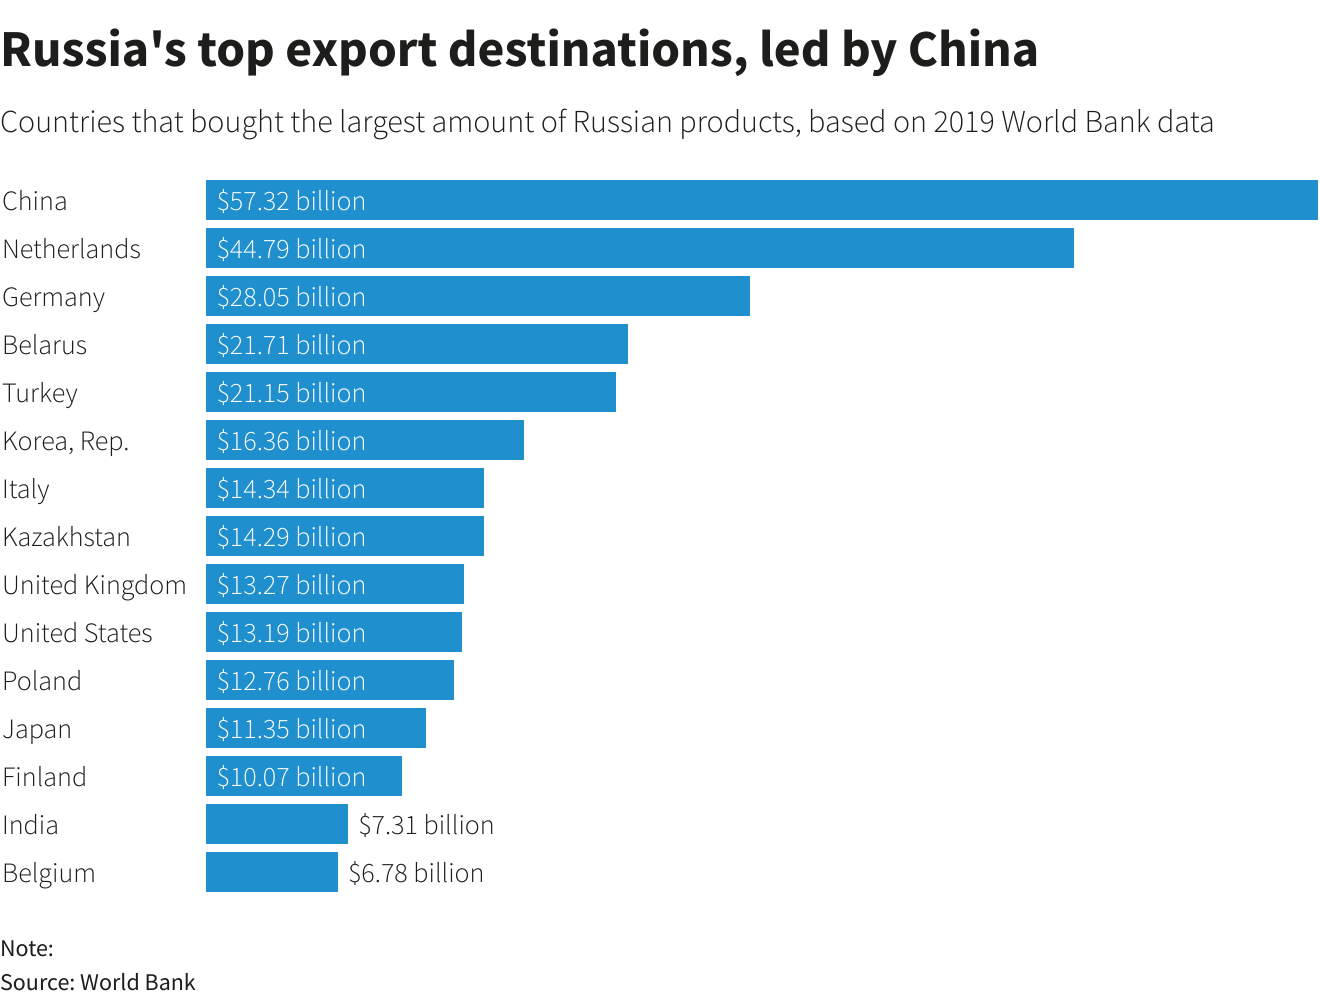 Le principali destinazioni di esportazione della Russia, guidate dalla Cina